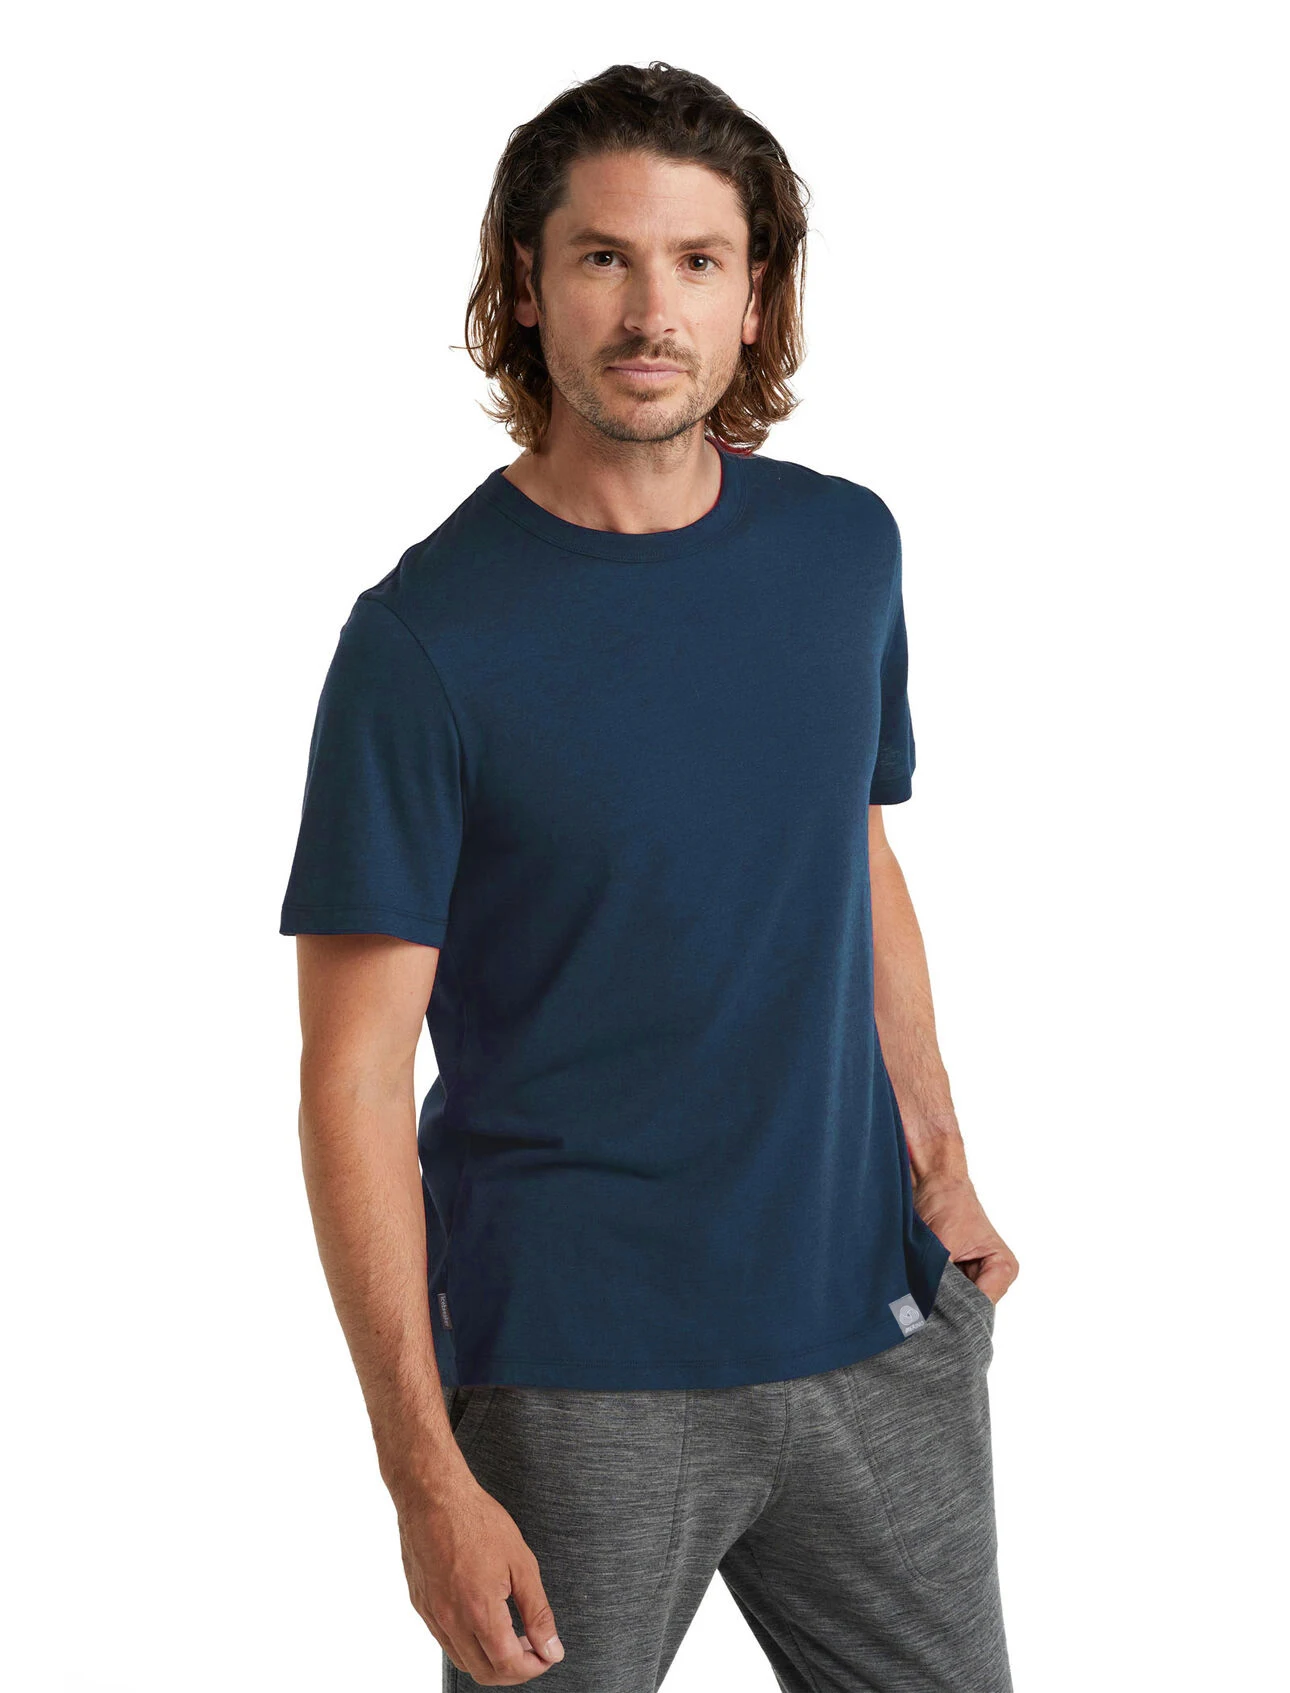 Мужская футболка из 100% мериносовой шерсти Спортивная уличная мериноса для